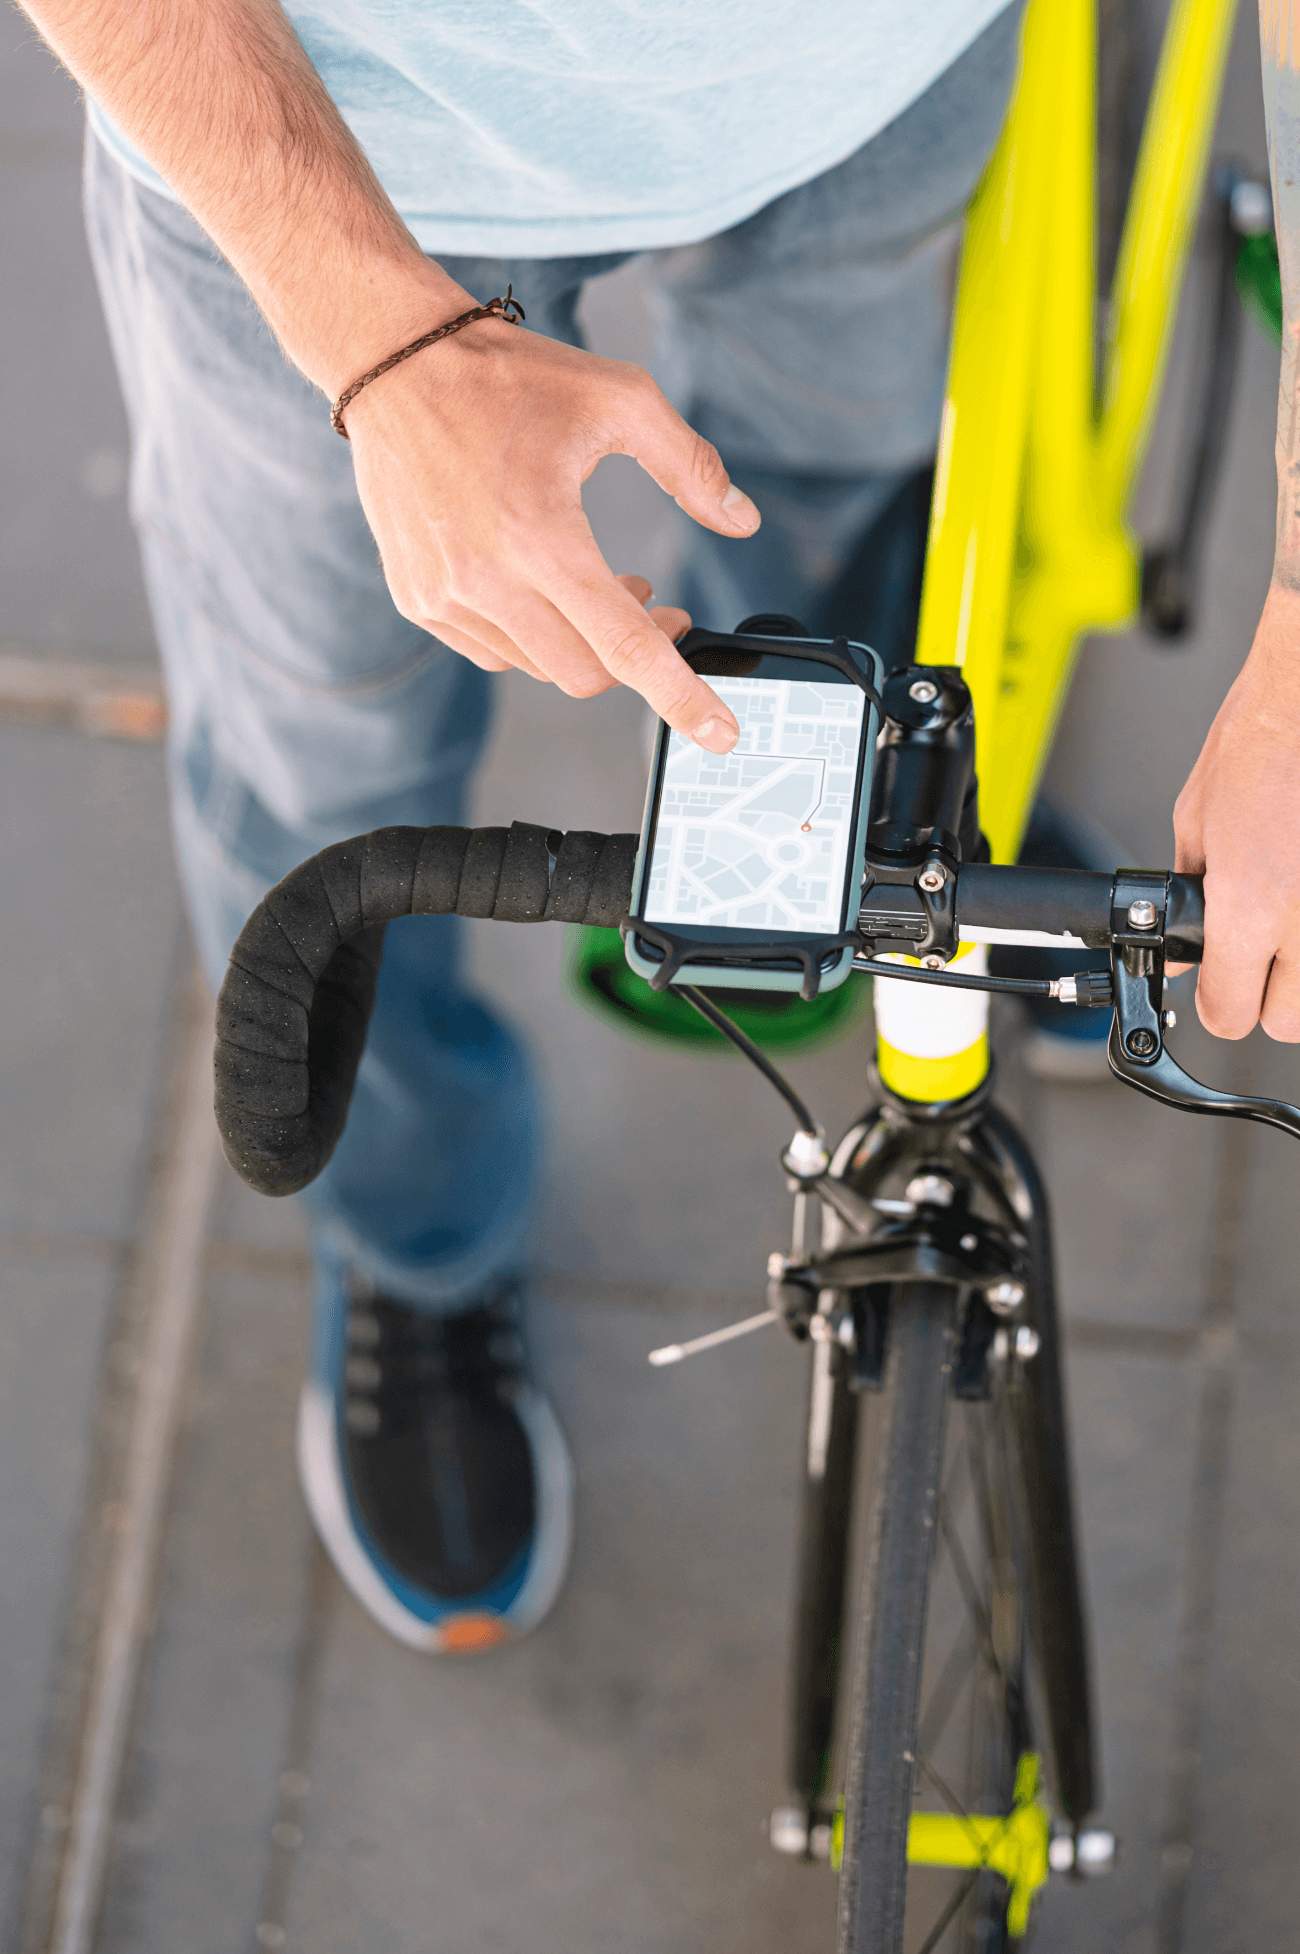 najlepsze-aplikacje-rowerowe-technologiczna-jazda-jaki-rower-pl